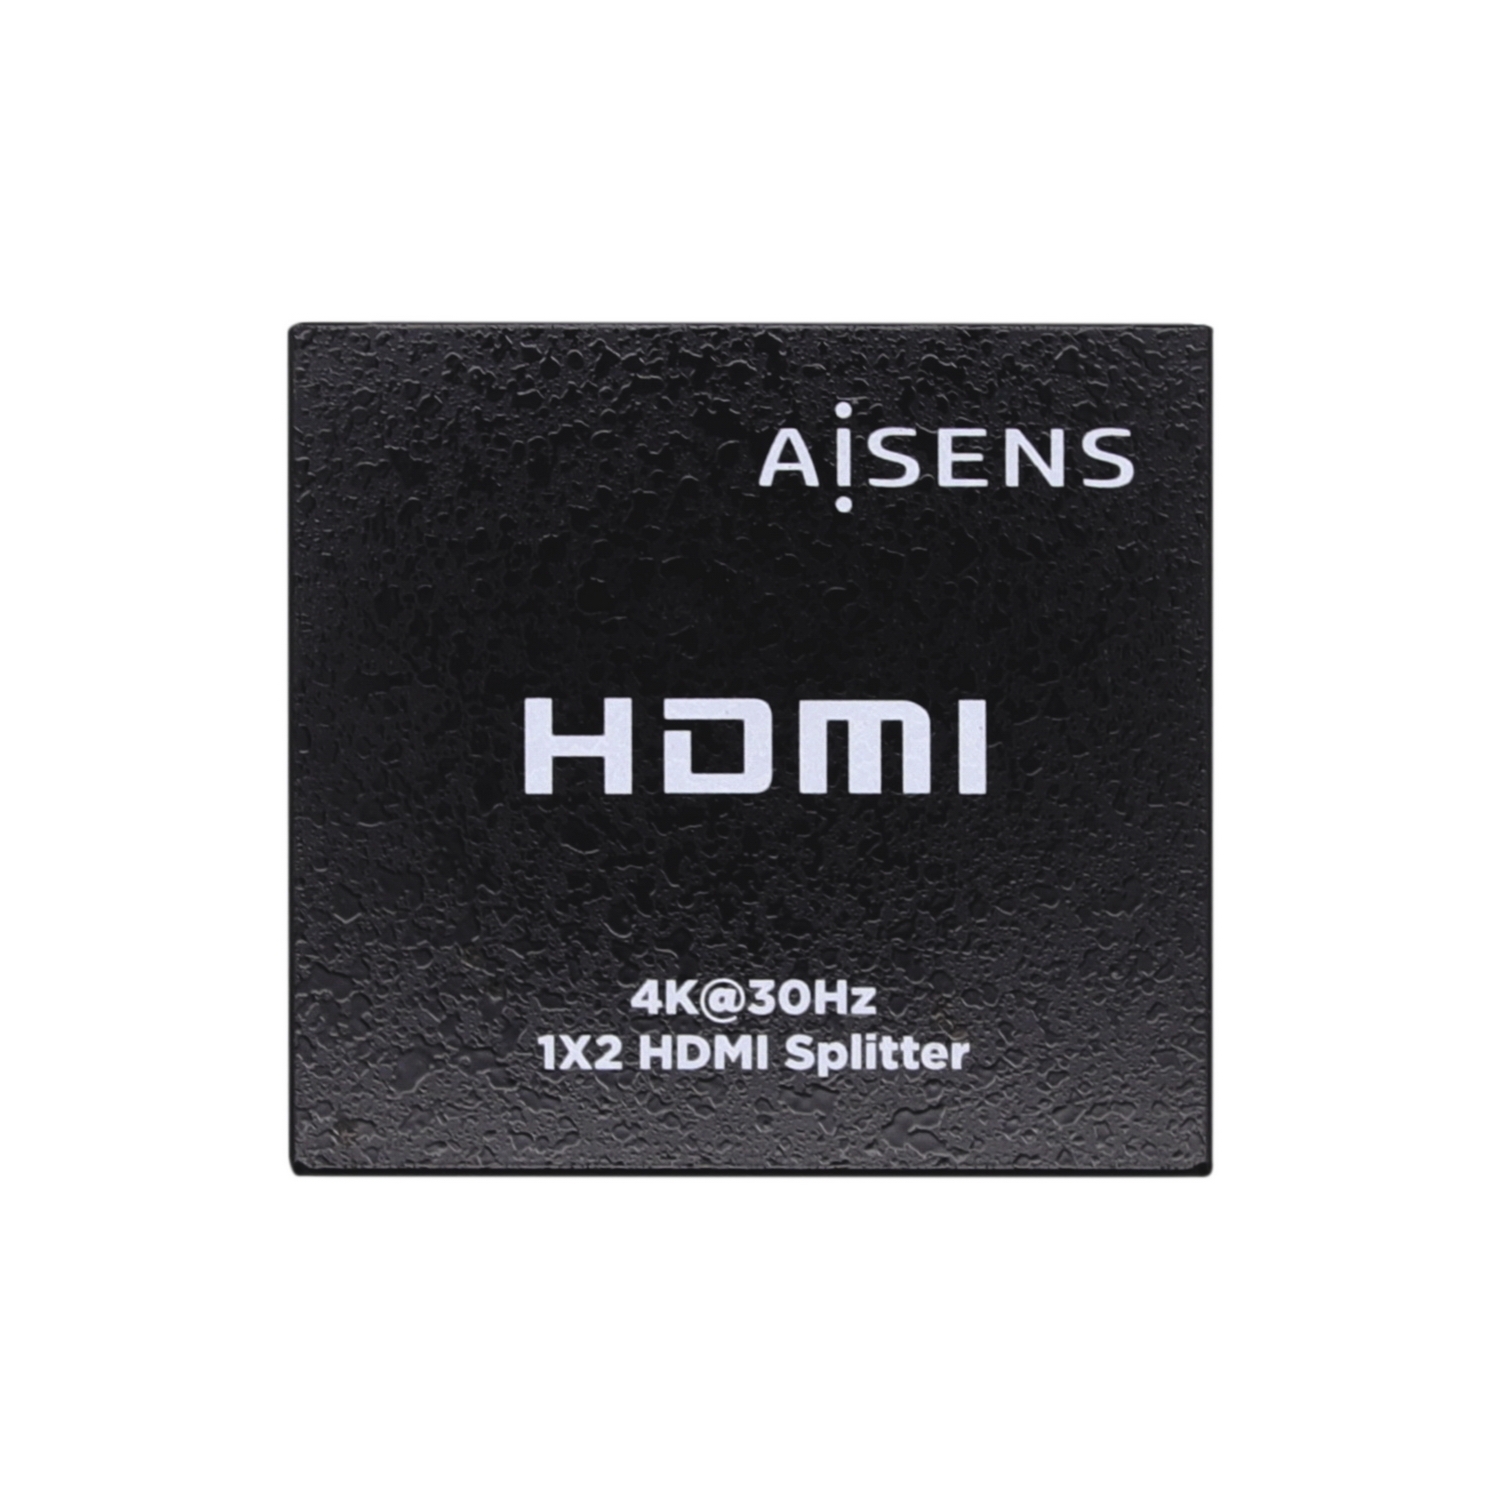 HDMI Duplicador 4K@30HZ 1x2 con Alimentación, Negro - AISENS®